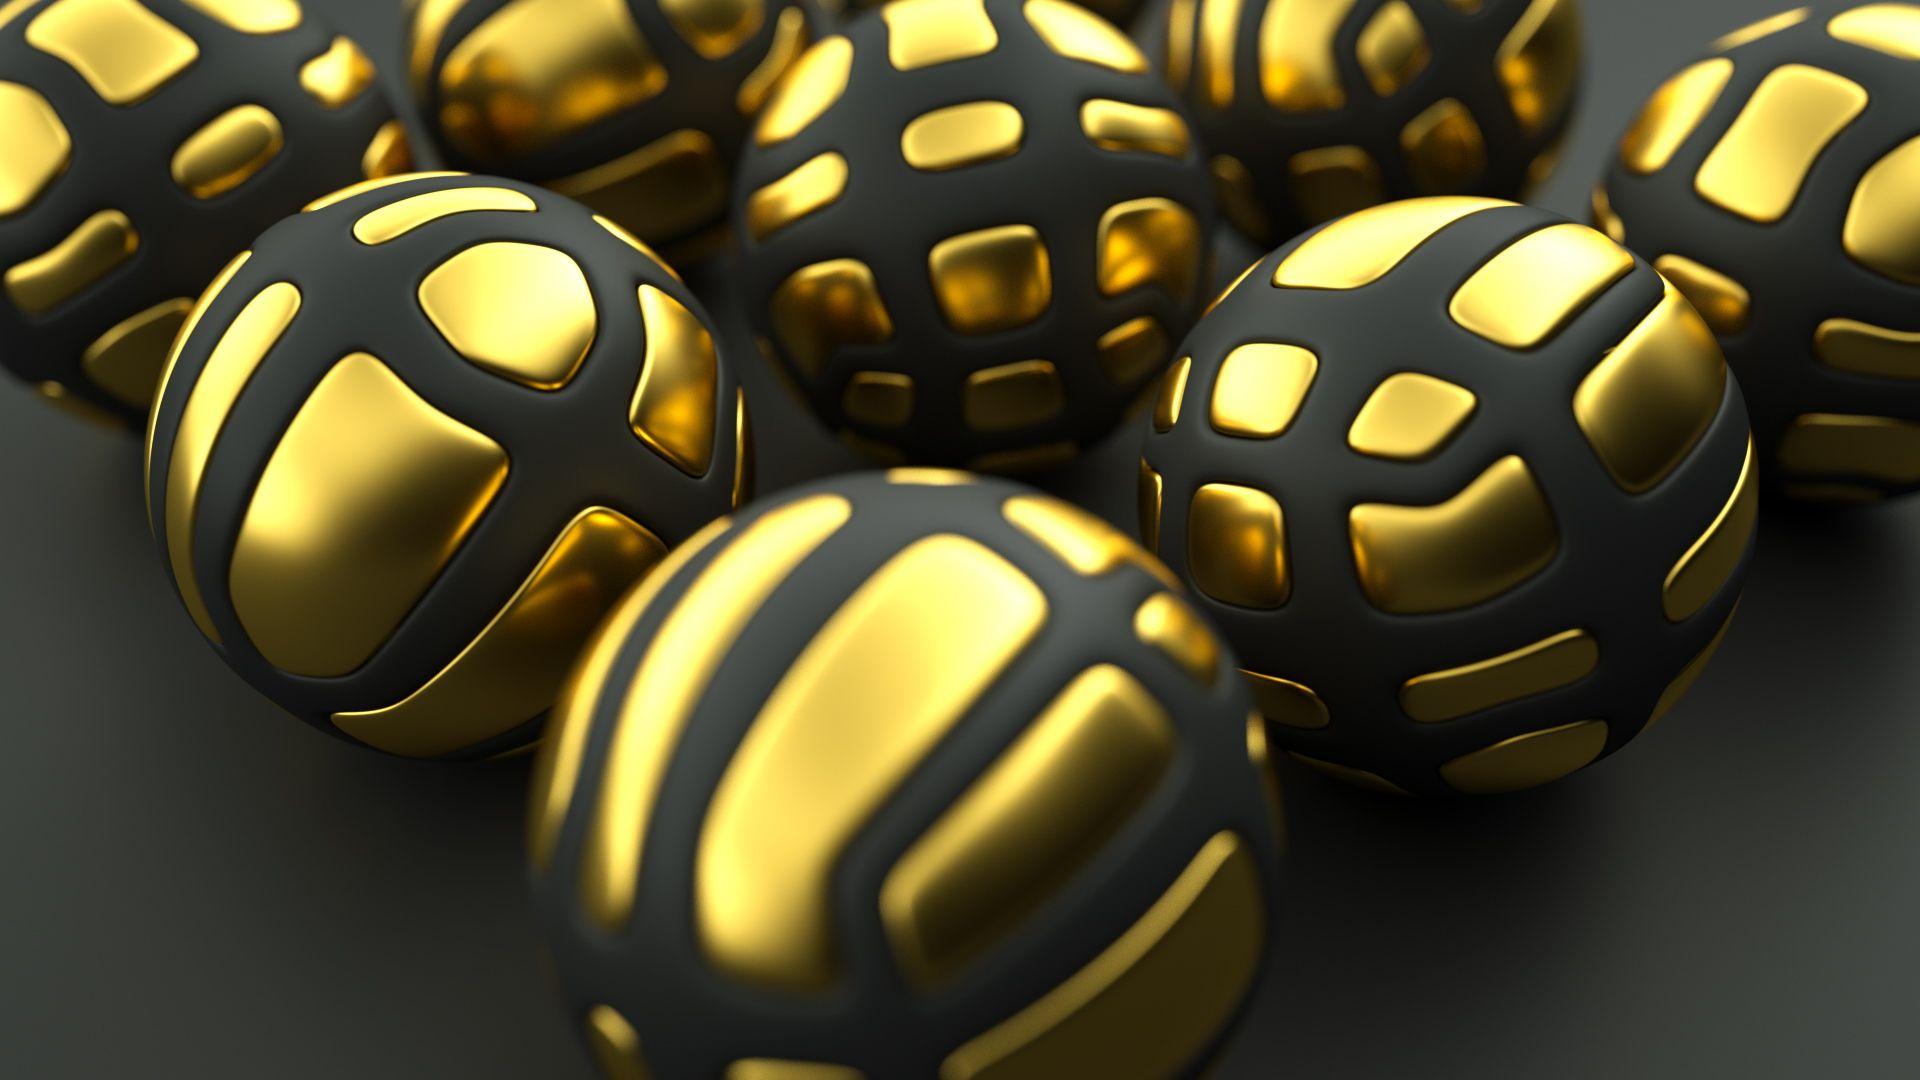 golden black 3D sphere wallpaper download 4k picture desktop